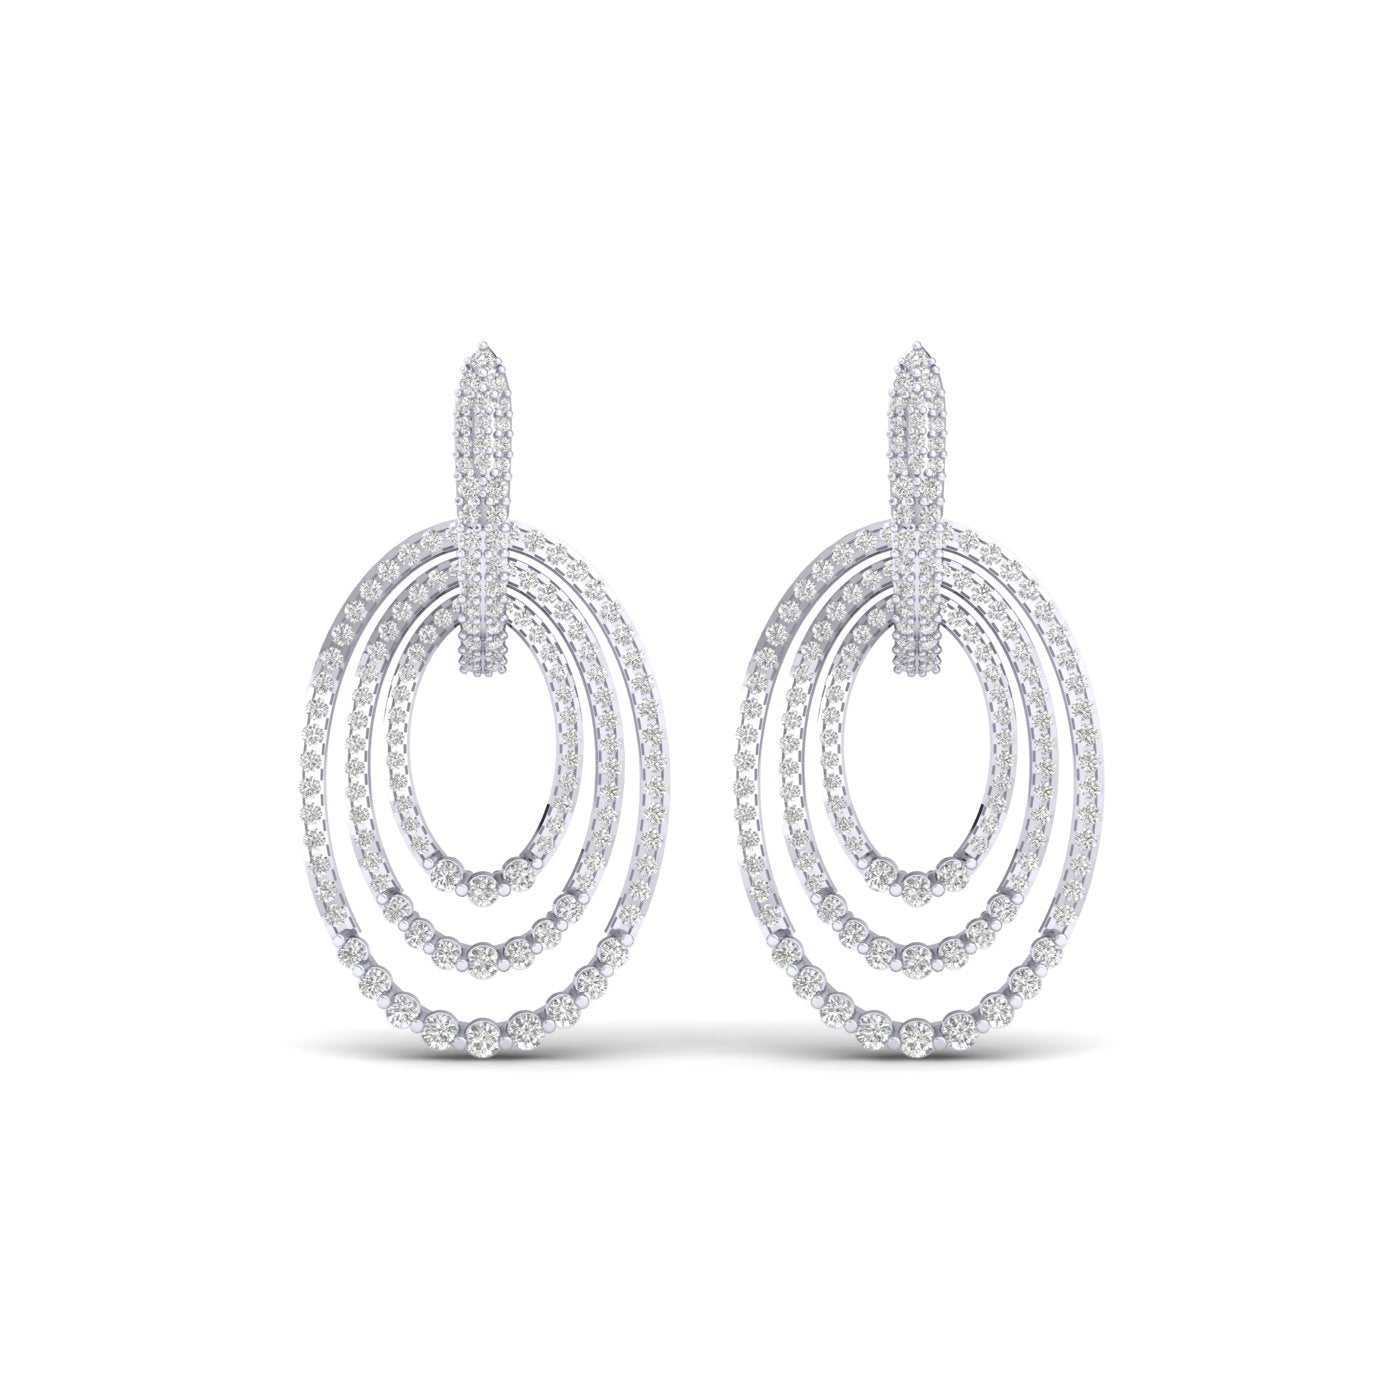 Twinkling Tassels Diamond Earrings